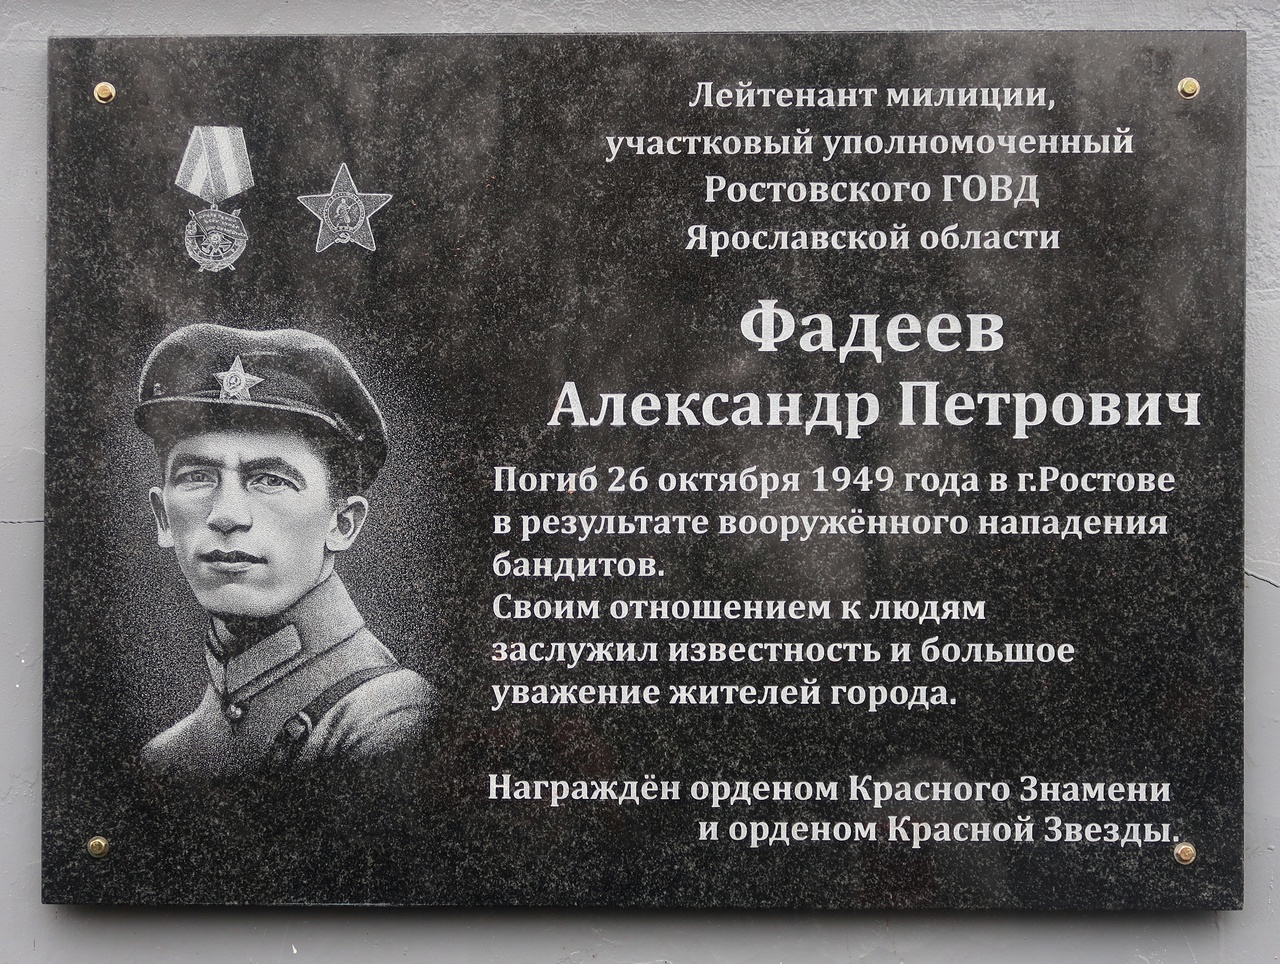 Открыта мемориальная доска лейтенанту милиции А. П. Фадееву, погибшему от рук бандитов